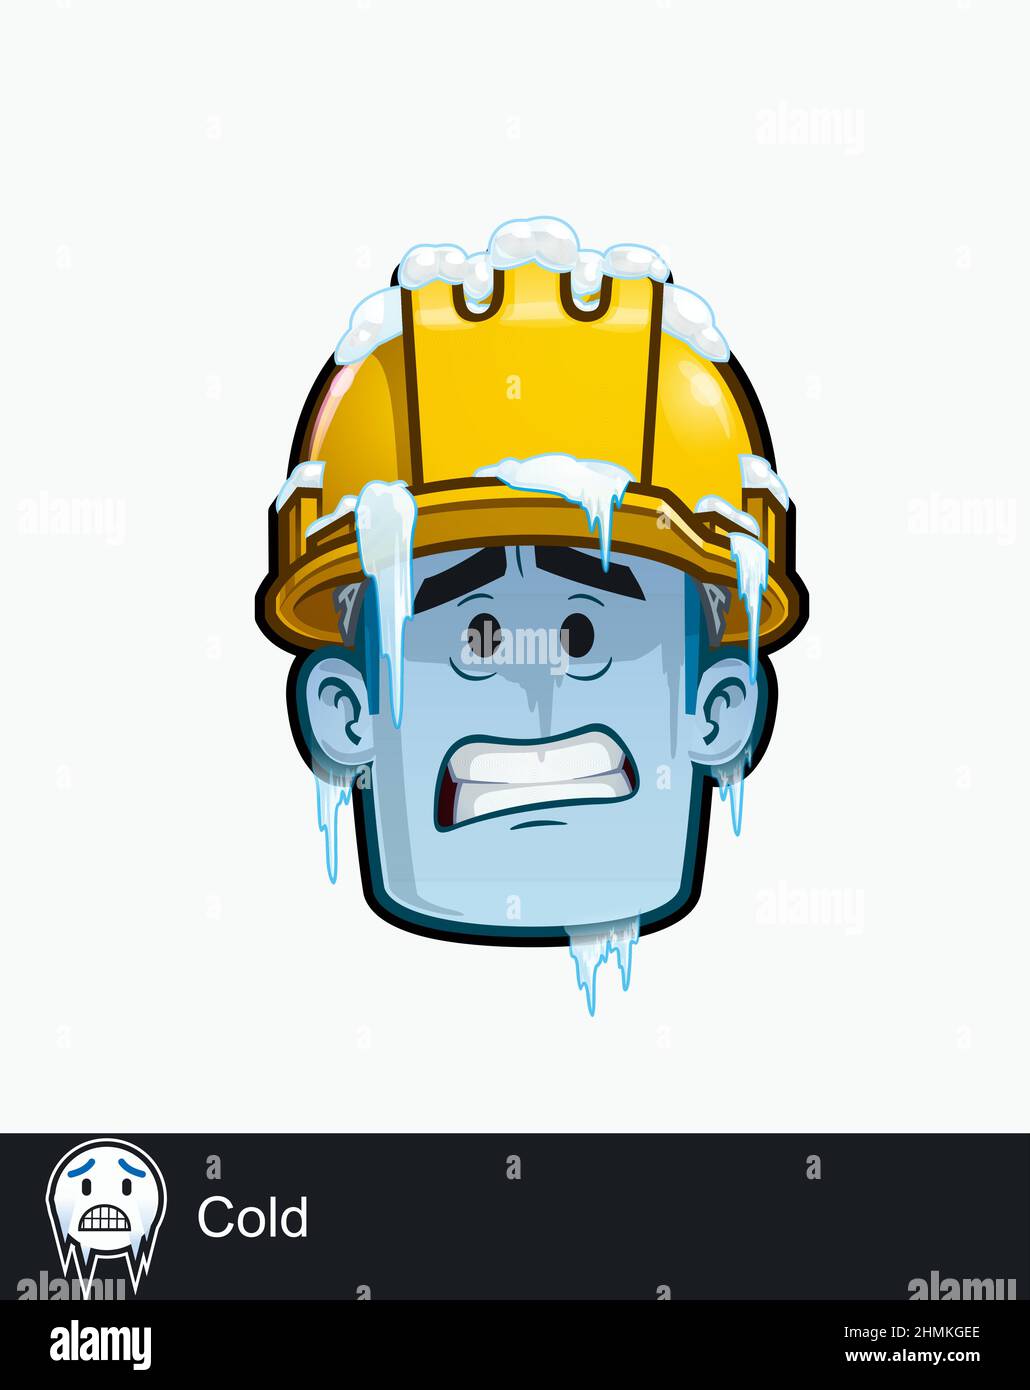 Ikone eines Bauarbeiters Gesicht mit kaltem - eiskalten emotionalen Ausdruck. Alle Elemente übersichtlich auf gut beschriebenen Ebenen und Gruppen. Stock Vektor